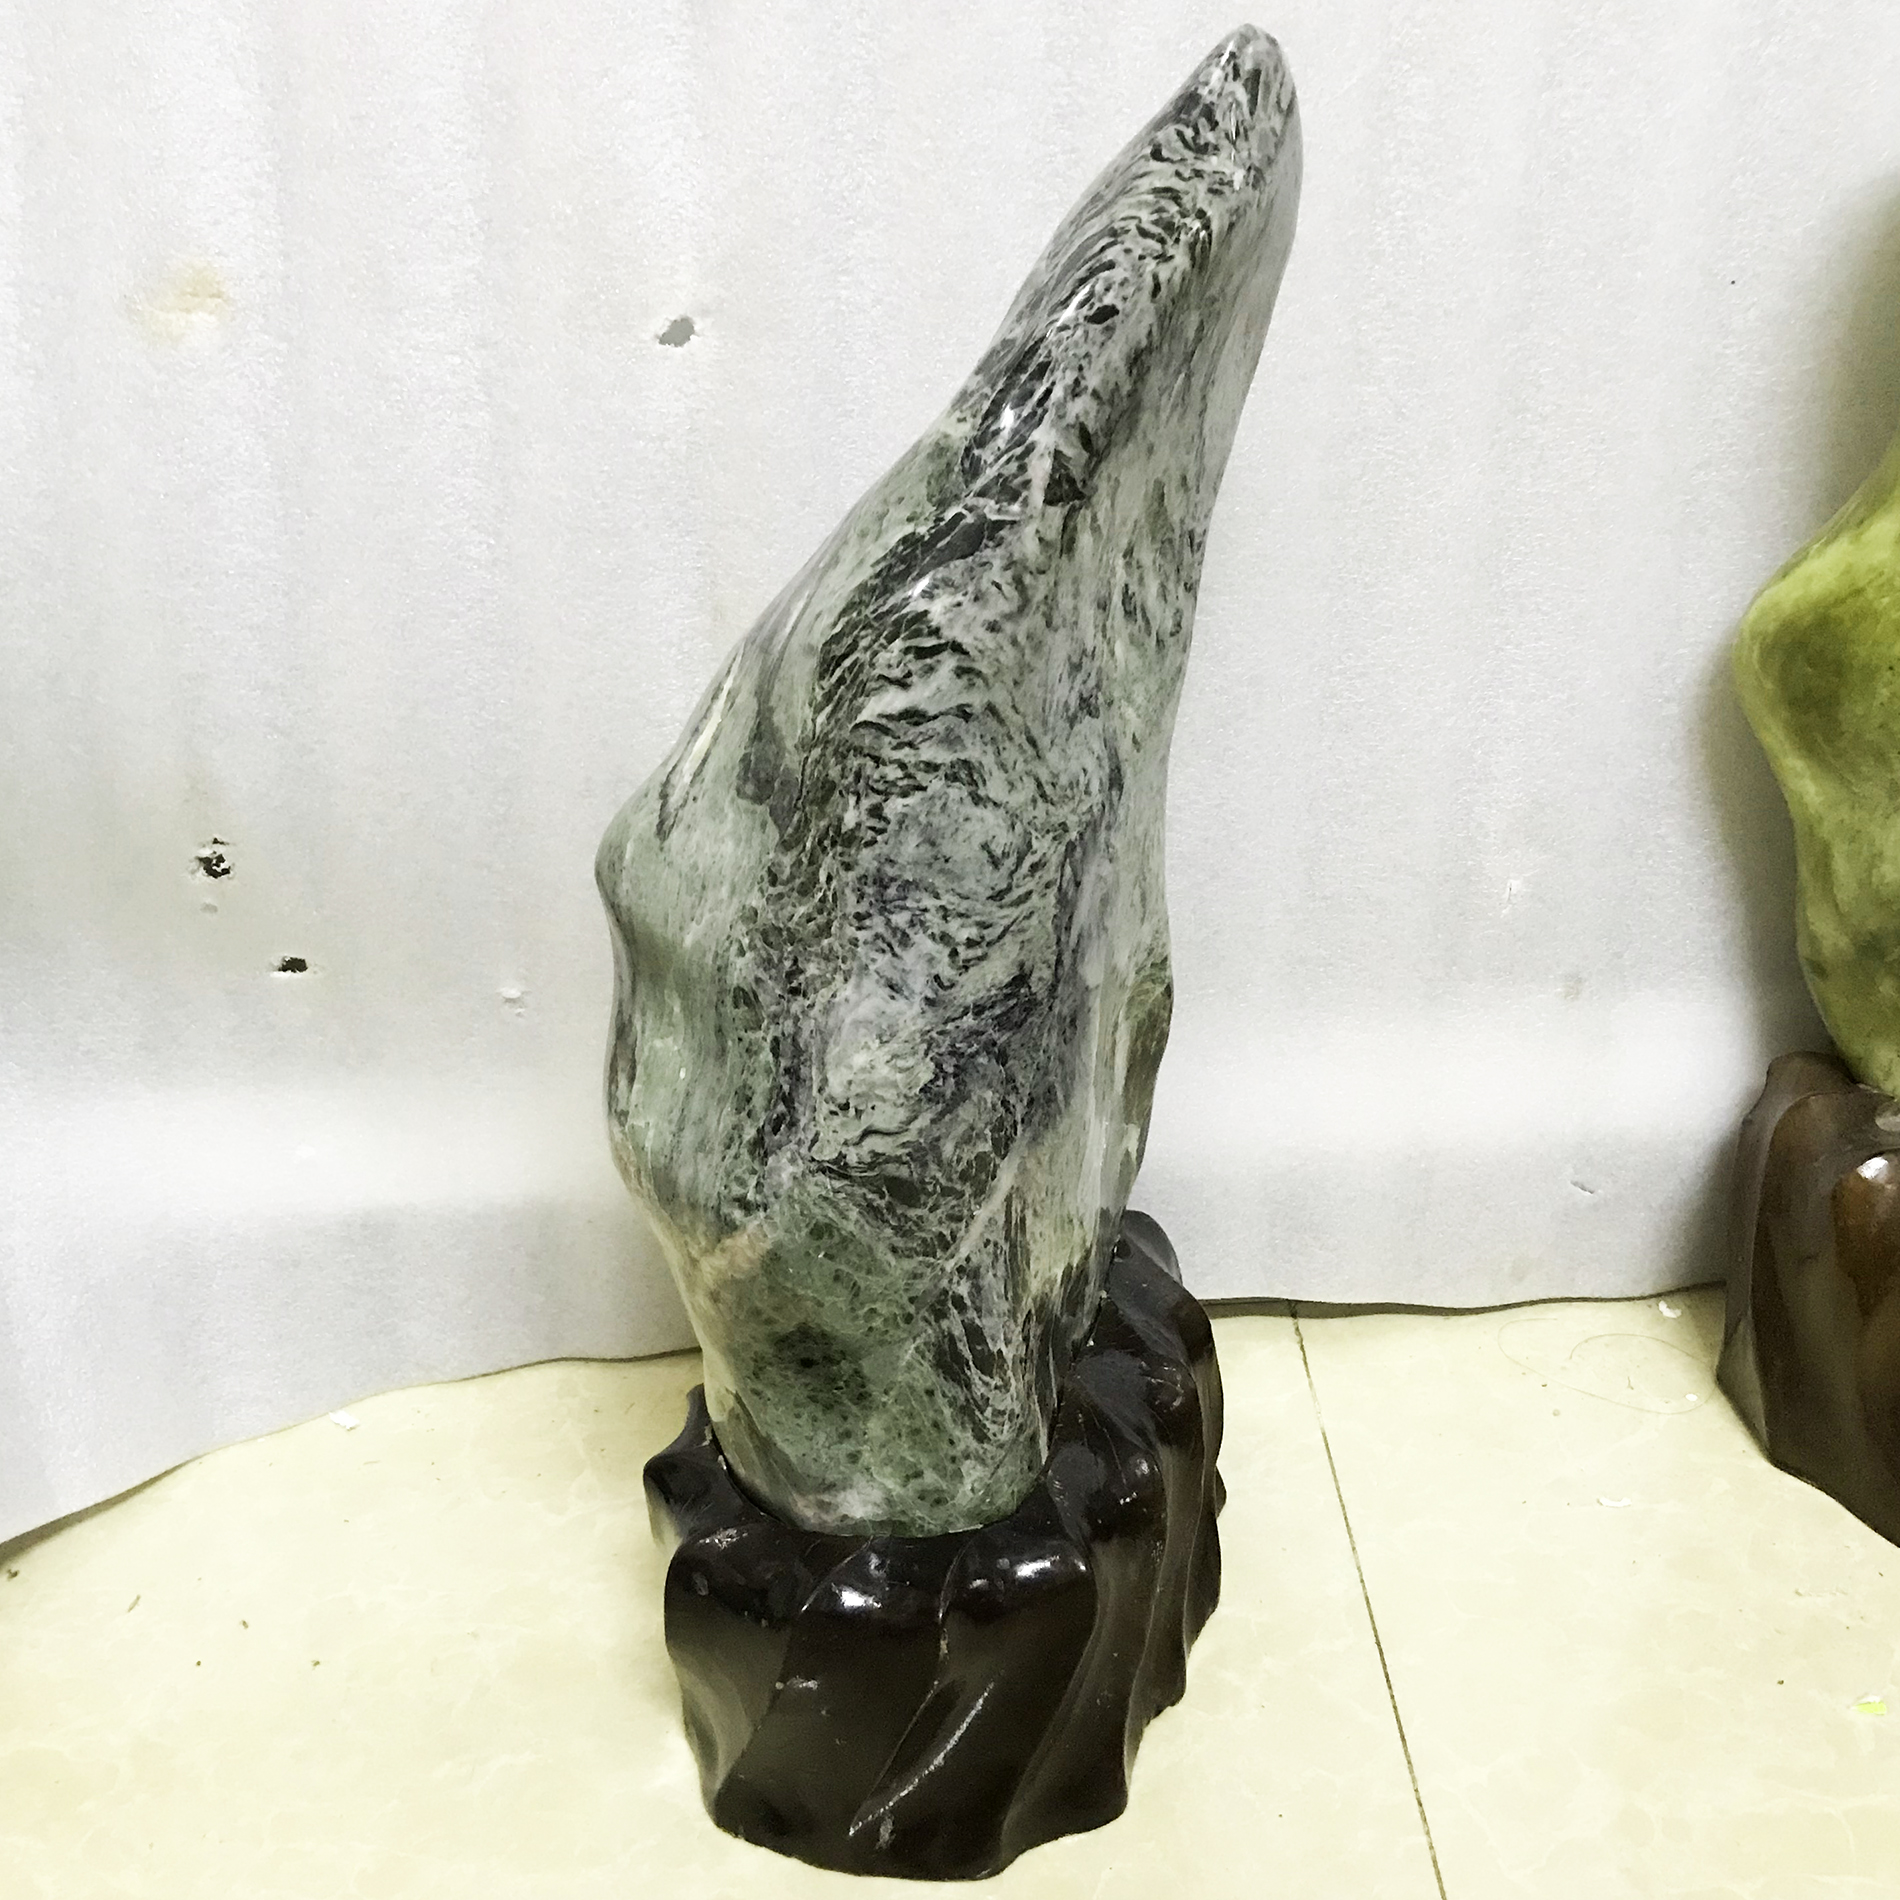 Cây đá tự nhiên toàn ngọc màu xanh lá đậm nặng 10 kg, cao 45 cm cho người mệnh Hỏa và Mộc damenhmoc